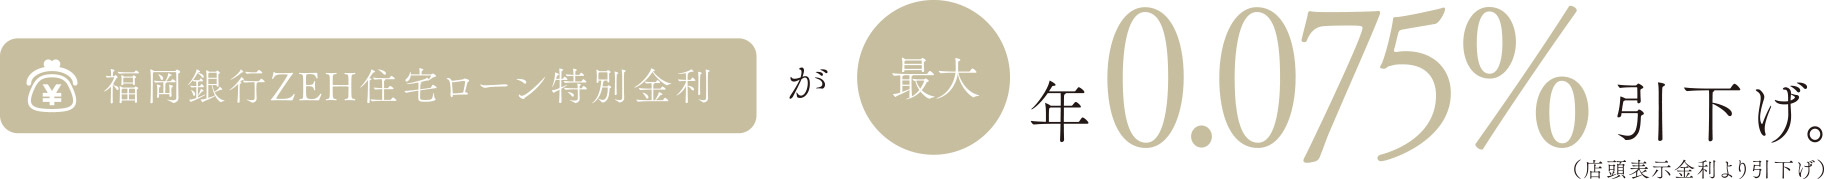 福岡銀行ZEH住宅ローン特別金利が最大年0.075%引下げ。（店頭表示金利より引下げ）